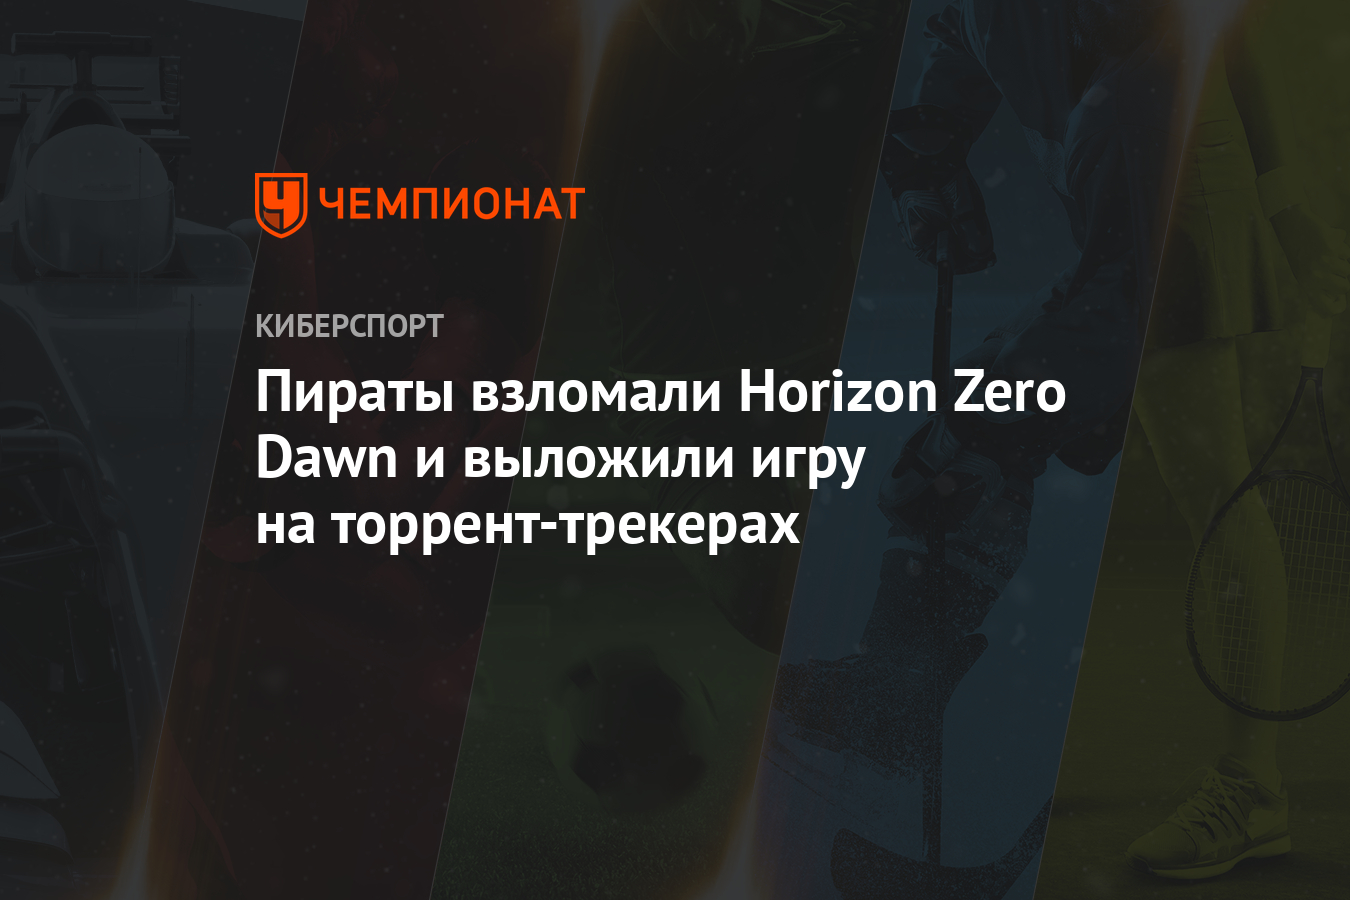 Пираты Взломали Horizon Zero Dawn И Выложили Игру На Торрент.